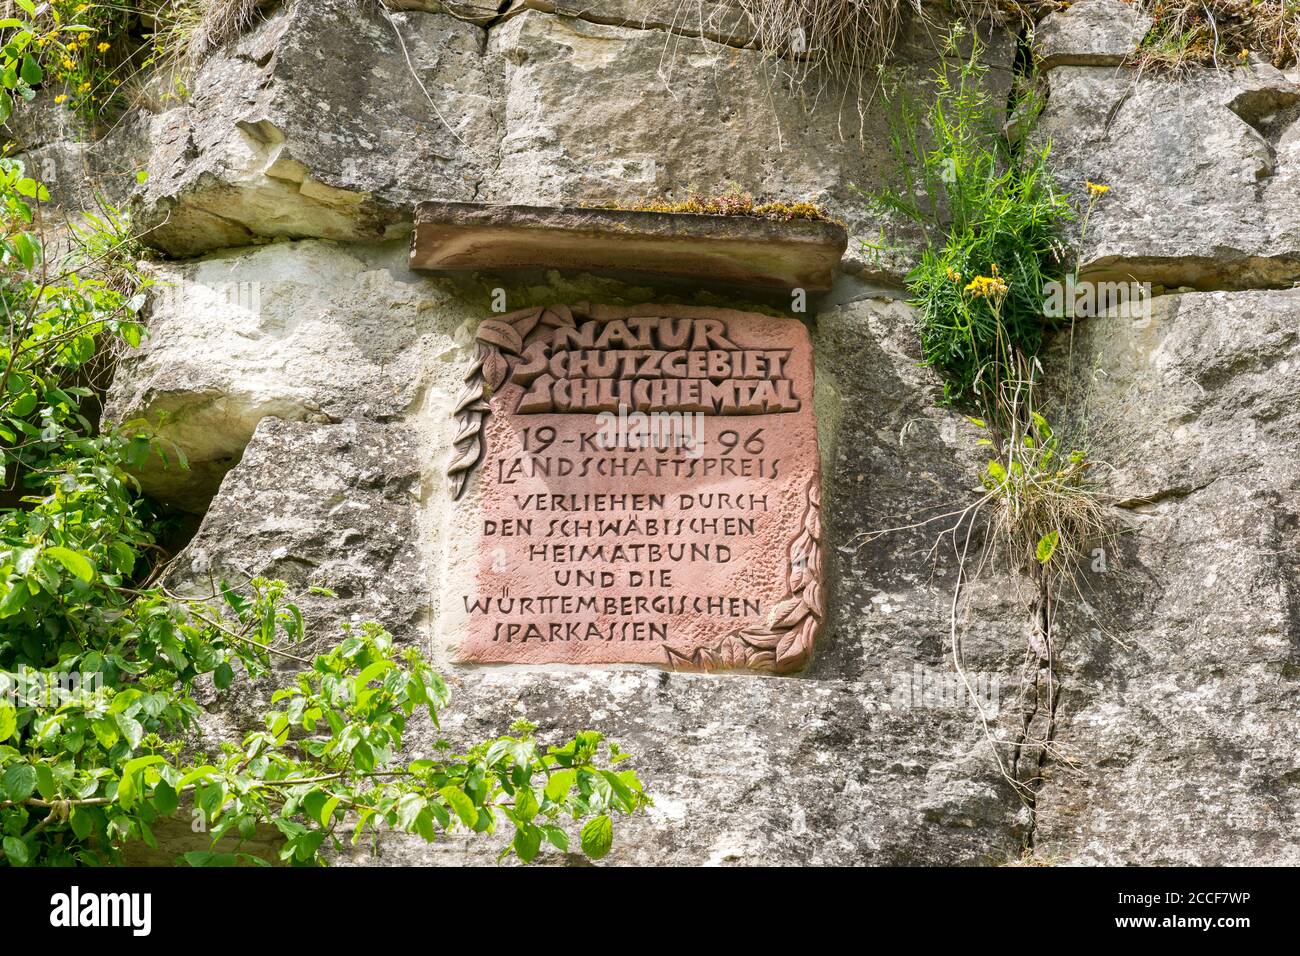 Alemania, Baden-Württemberg, Epfendorf, piedra conmemorativa 'Premio paisaje Cultural' en el valle de Schischem cerca de Butschhof Foto de stock